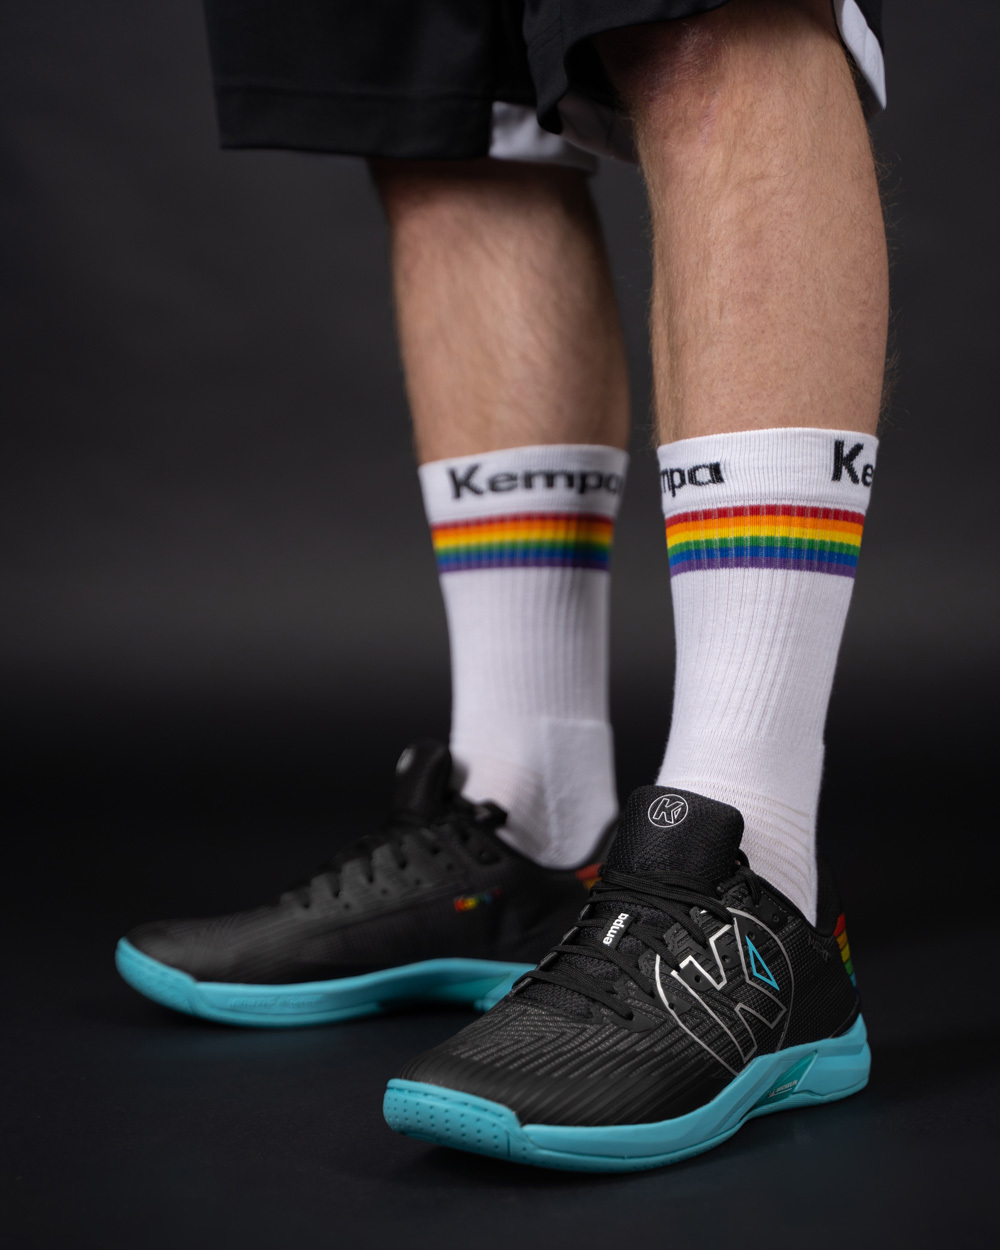 Kempa Socken und Schuhe aus der Rainbow Sonderkollektion